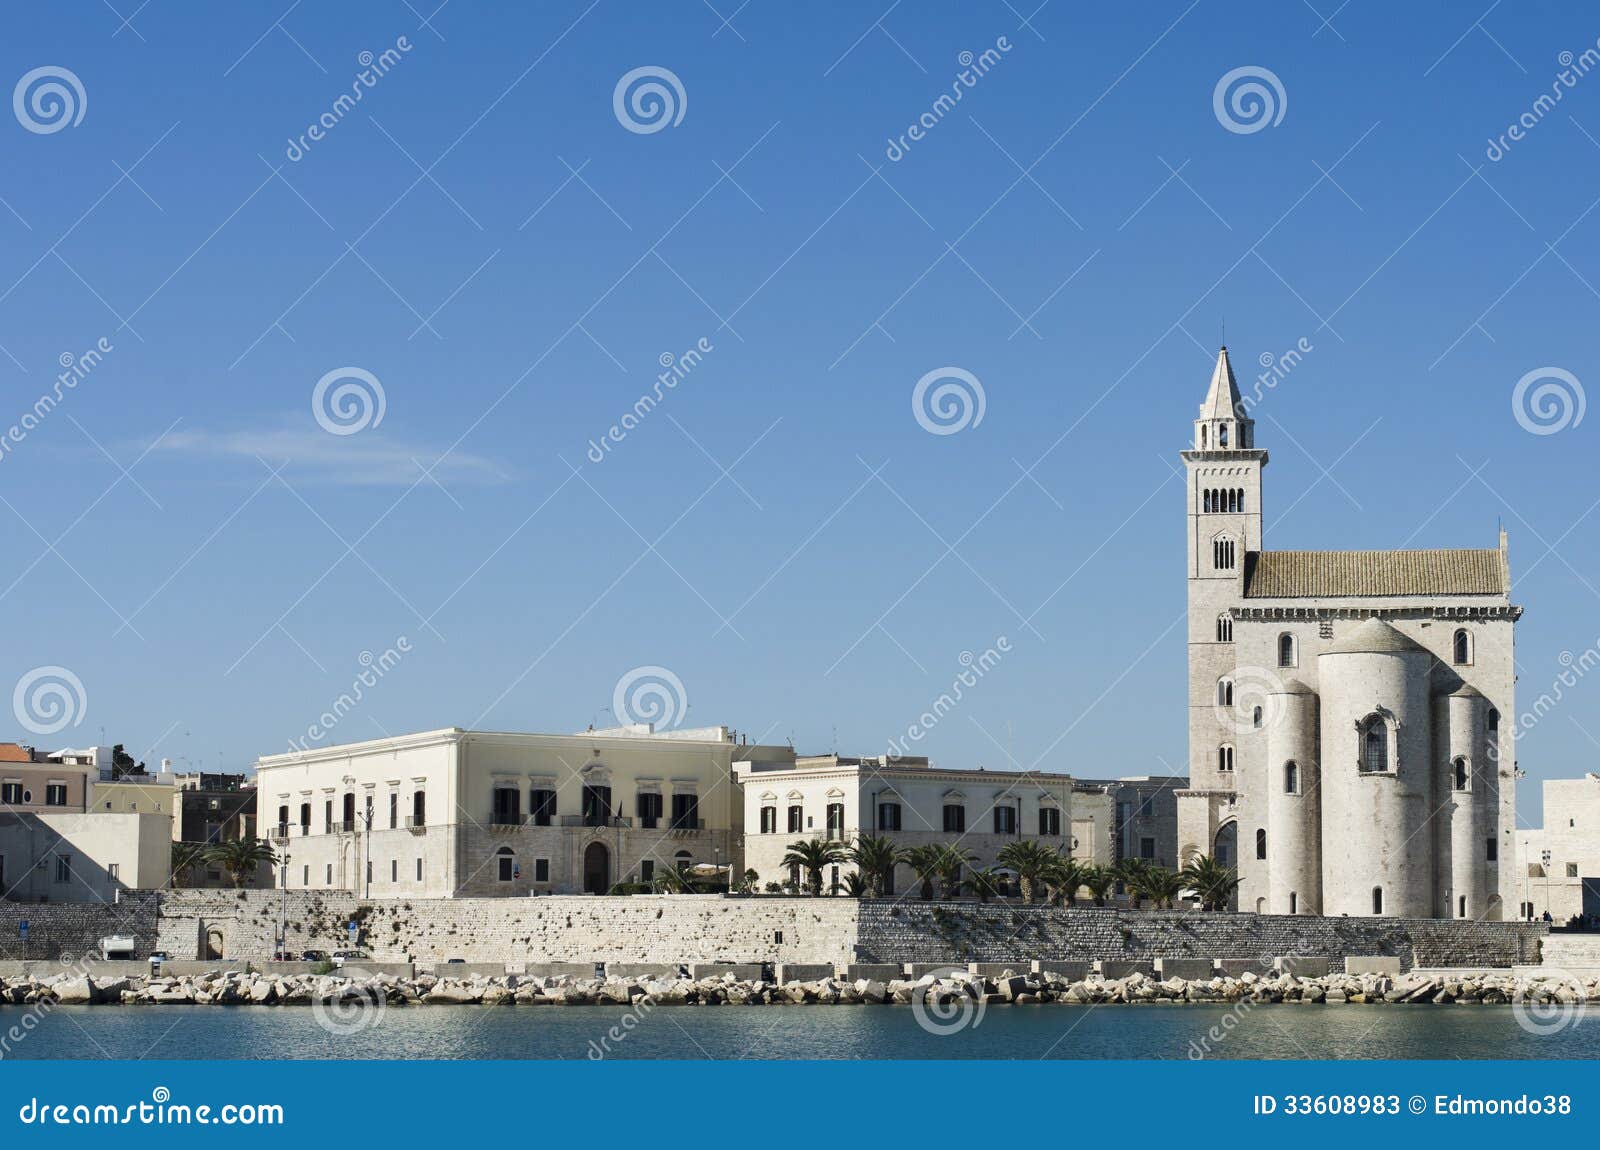 Trani domkyrka och hans gamla stad - Apulia. Trani domkyrka och dess historiska mitt som sett från havet